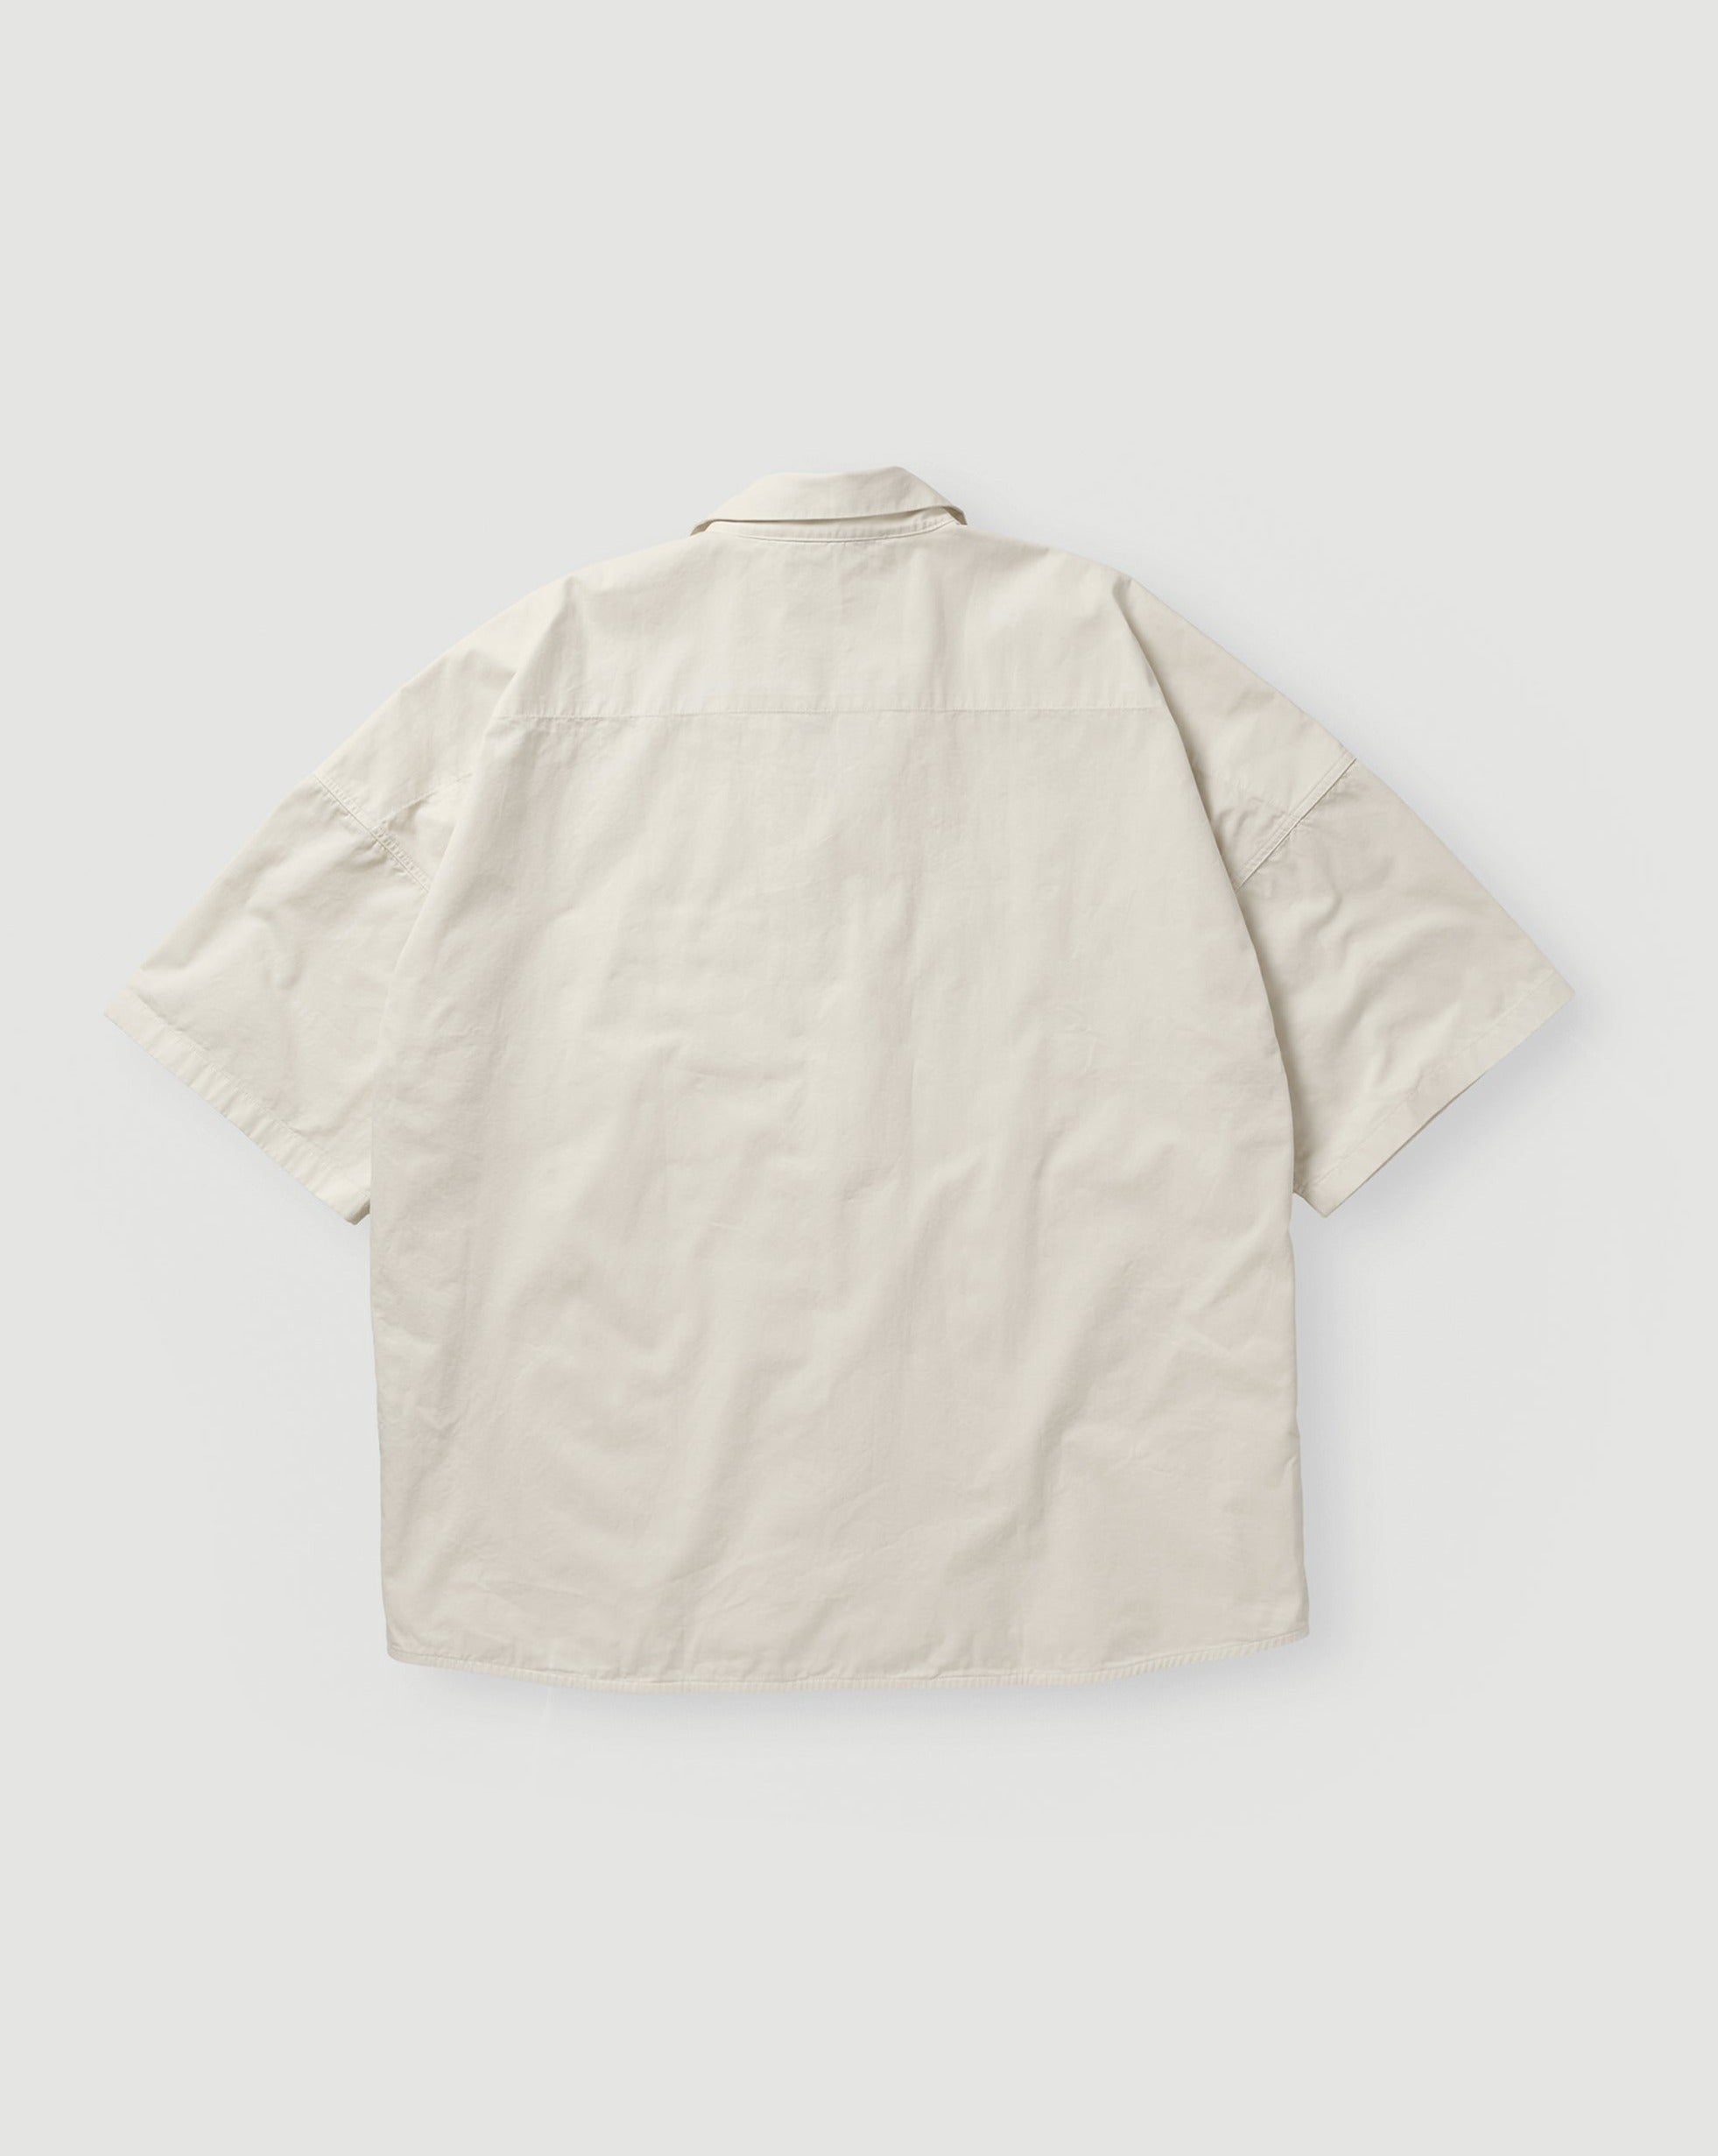 Applied Art Forms PM1-2 Short Sleeve Shirt Cold Ecru Shirt S/S Men